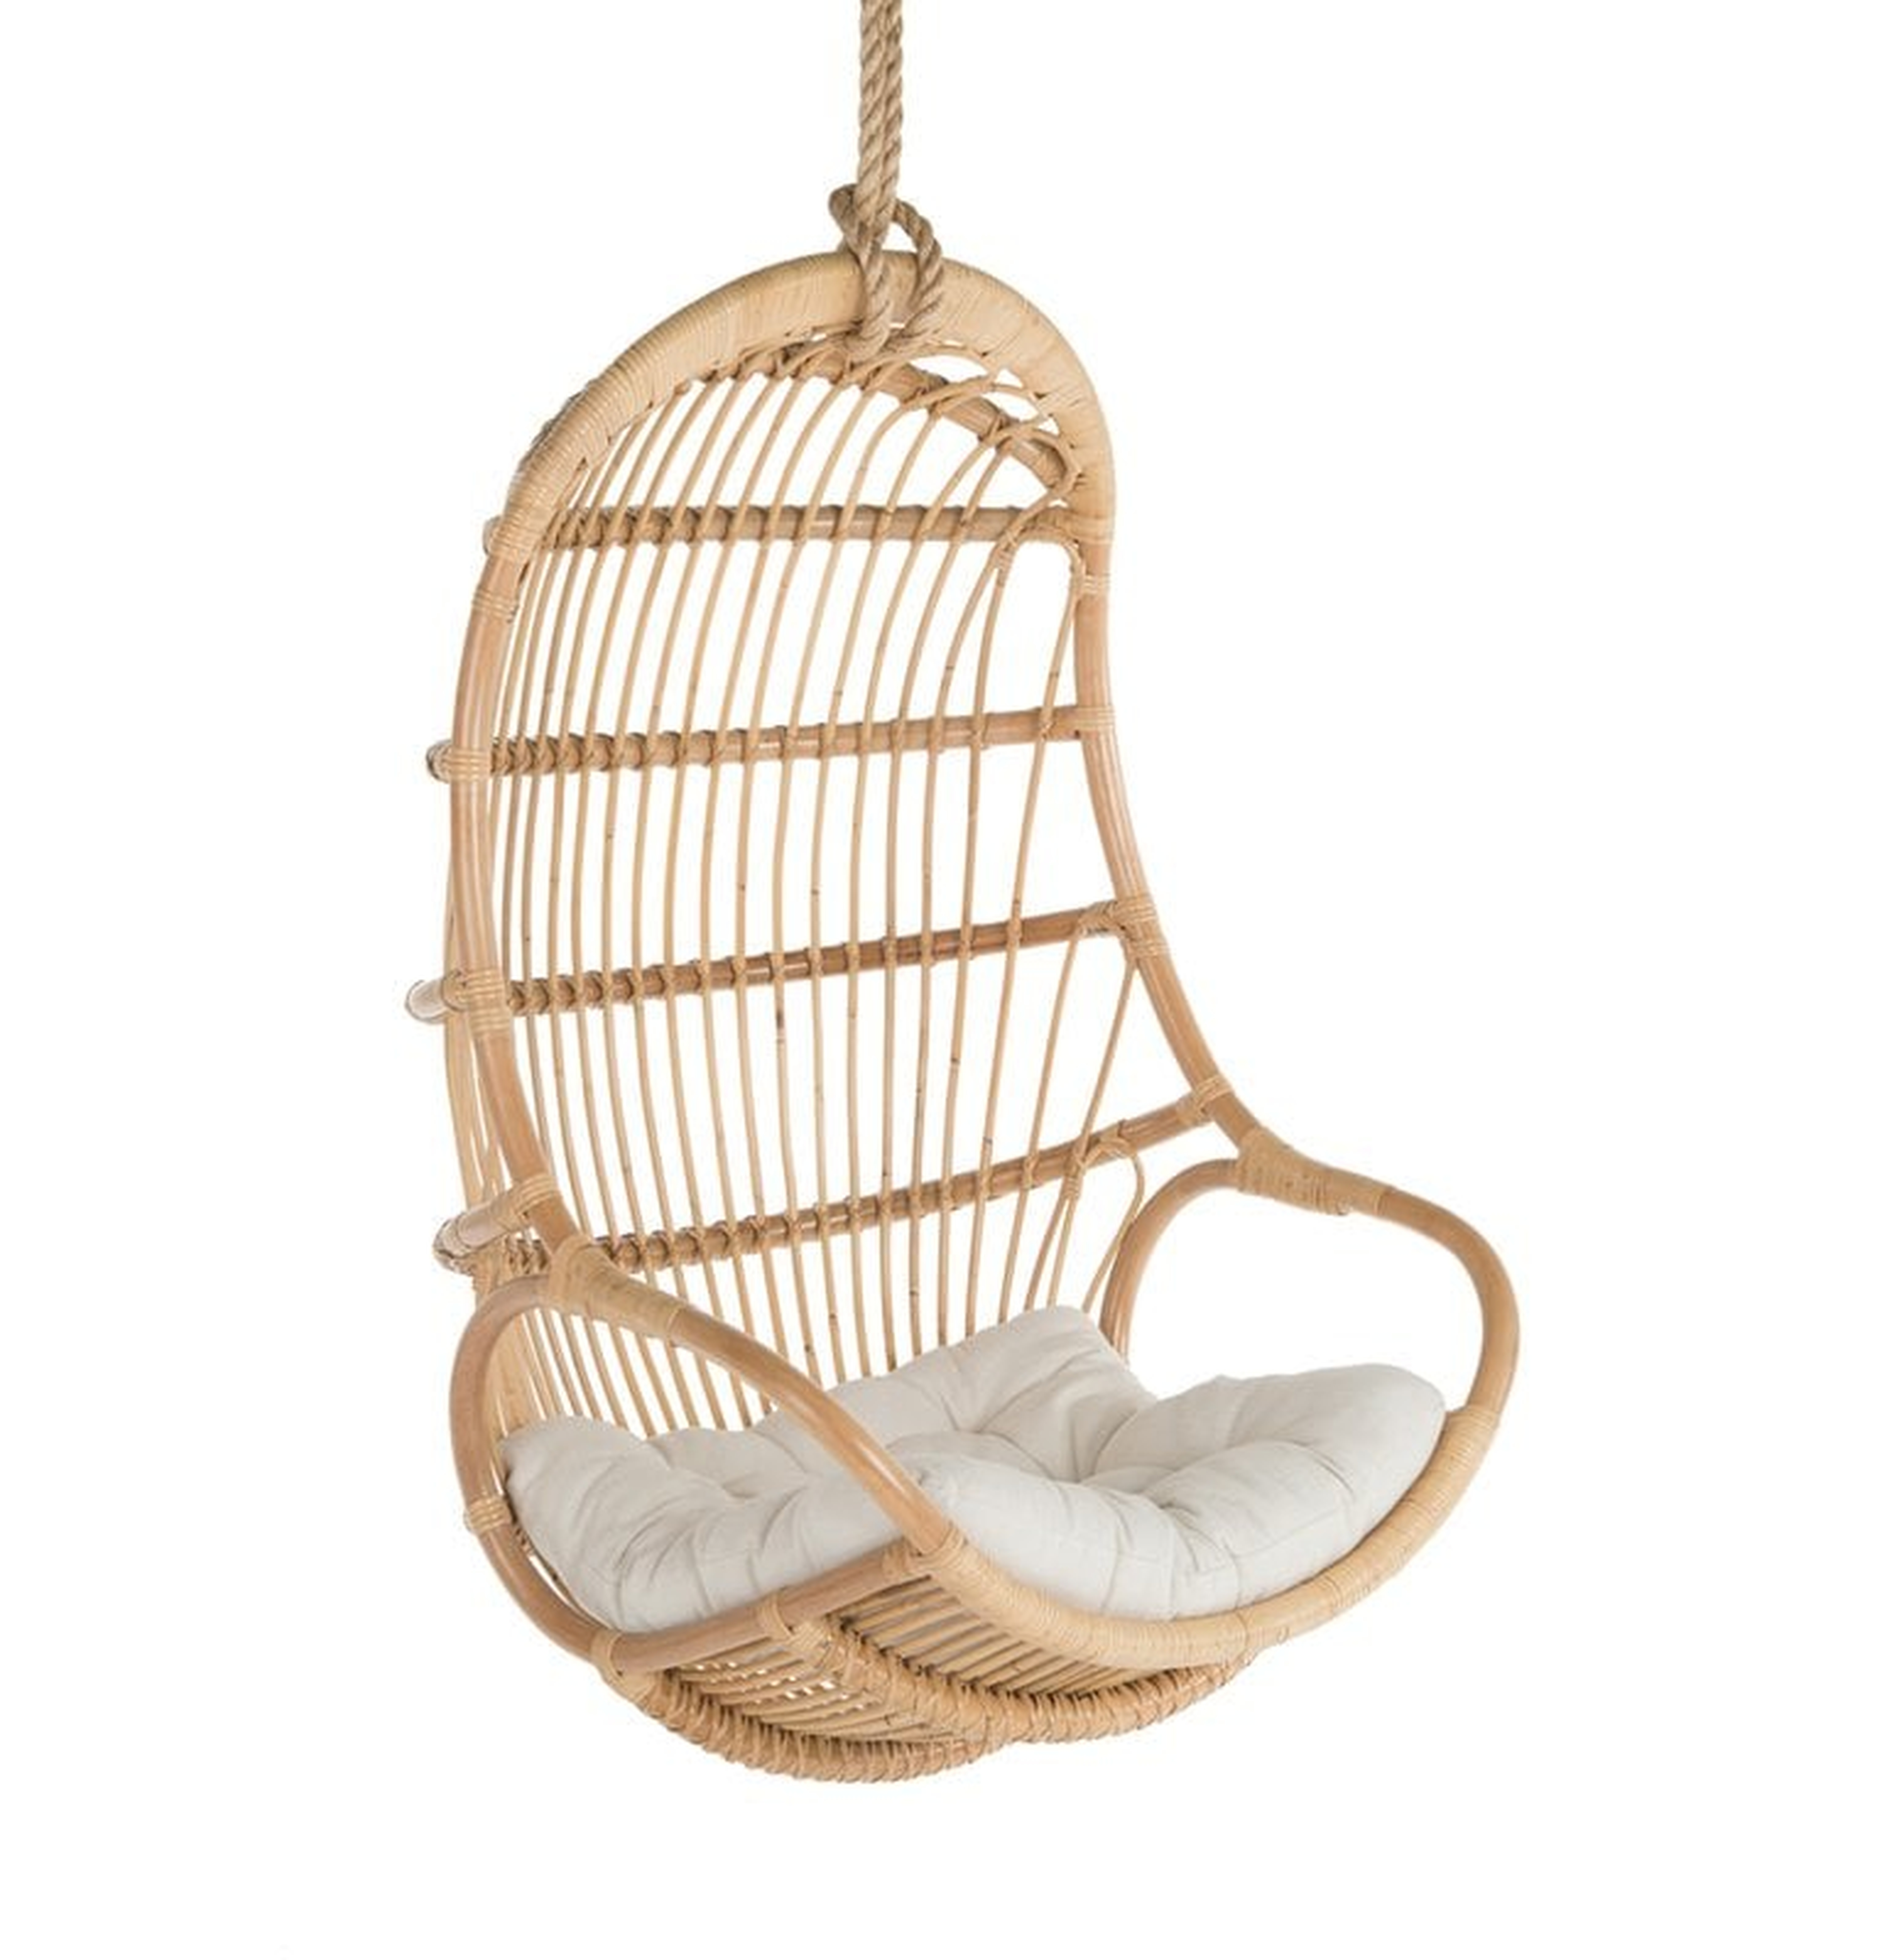 Briaroaks Hanging Rattan Swing Chair - Natural - Wayfair